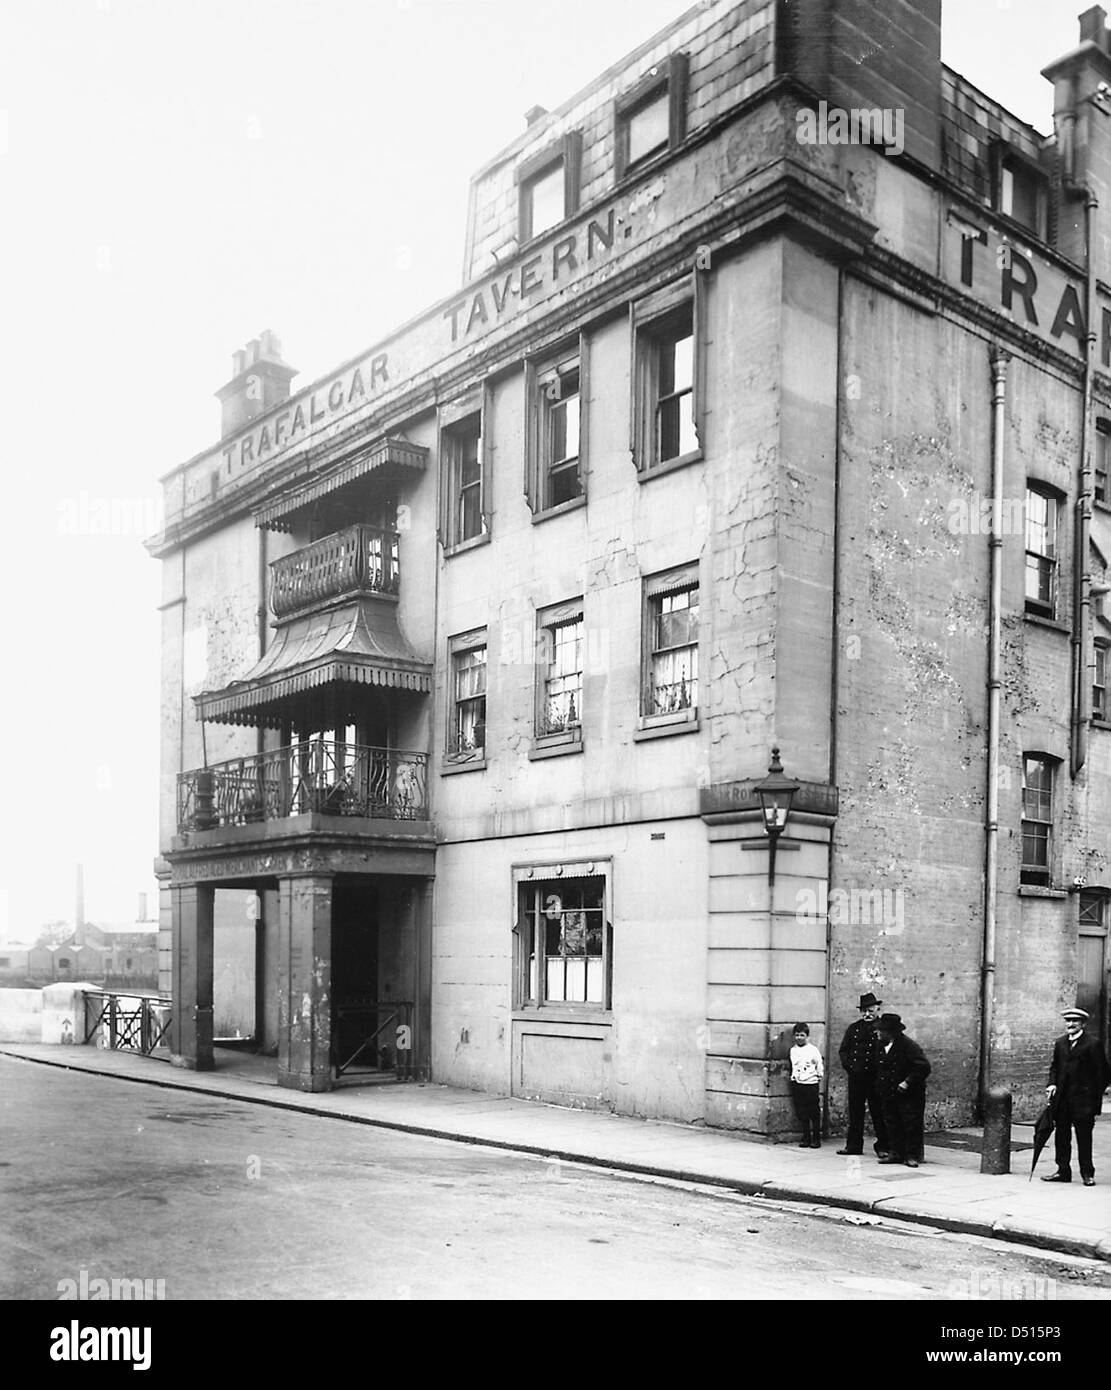 The Trafalgar Tavern Stock Photo